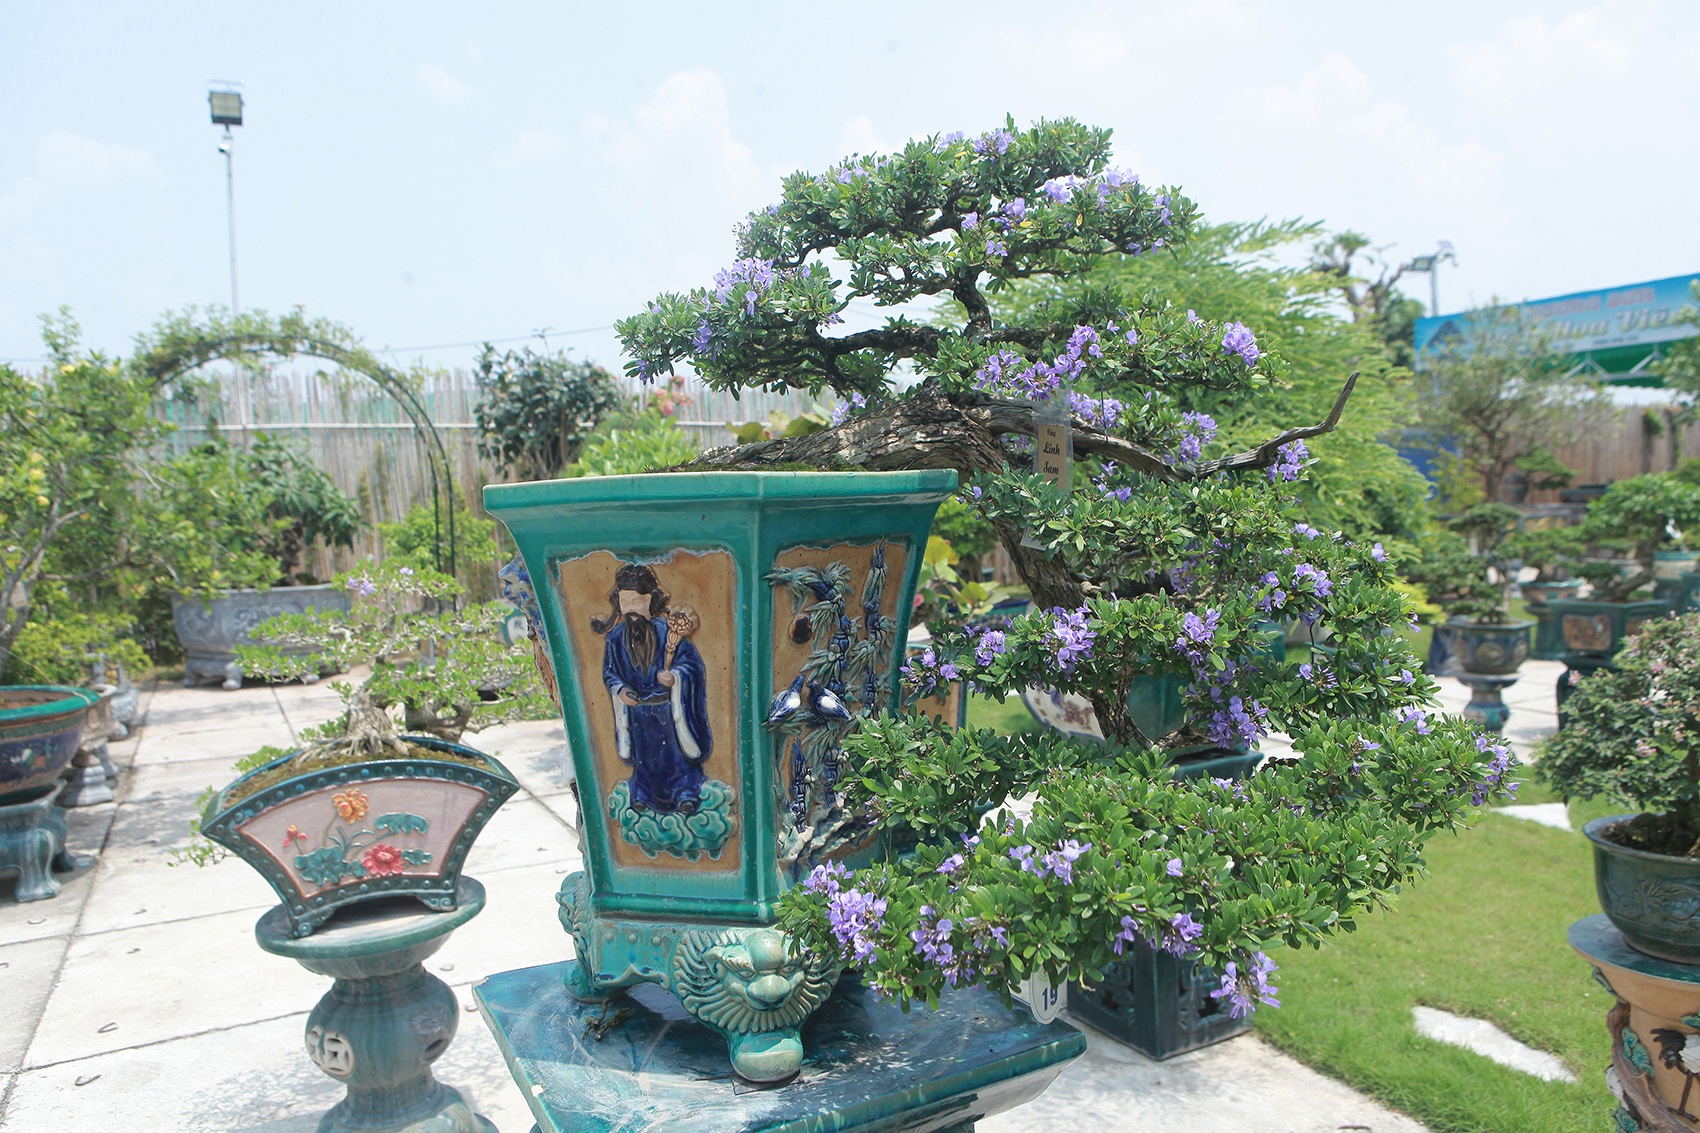 Mục sở thị khu vườn gần 1.000 cây cảnh bonsai hiếm có đất Hà Thành - 10